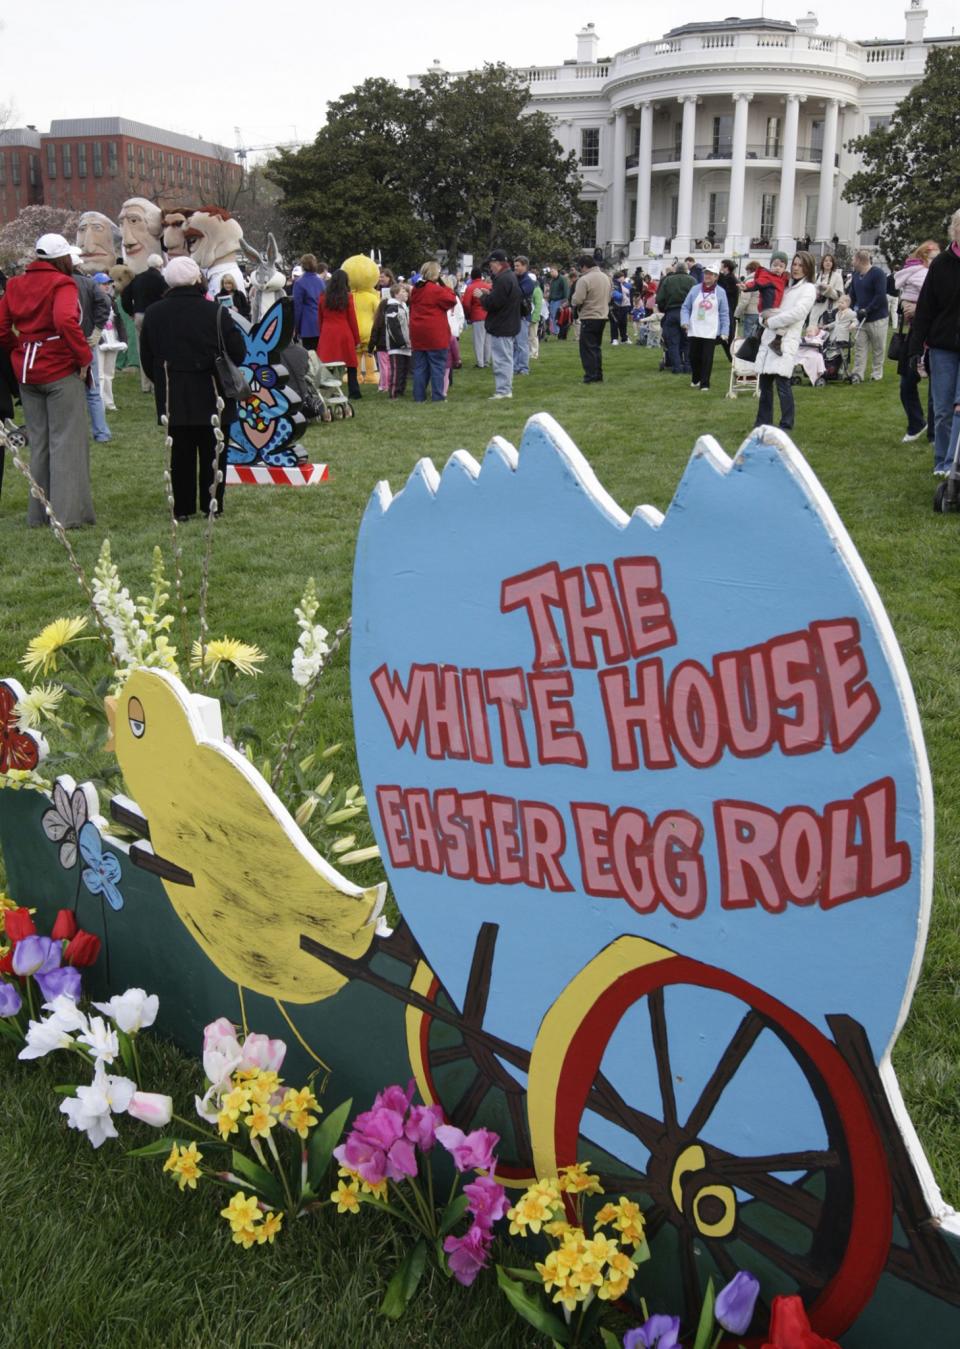 White House Easter Egg Roll sign